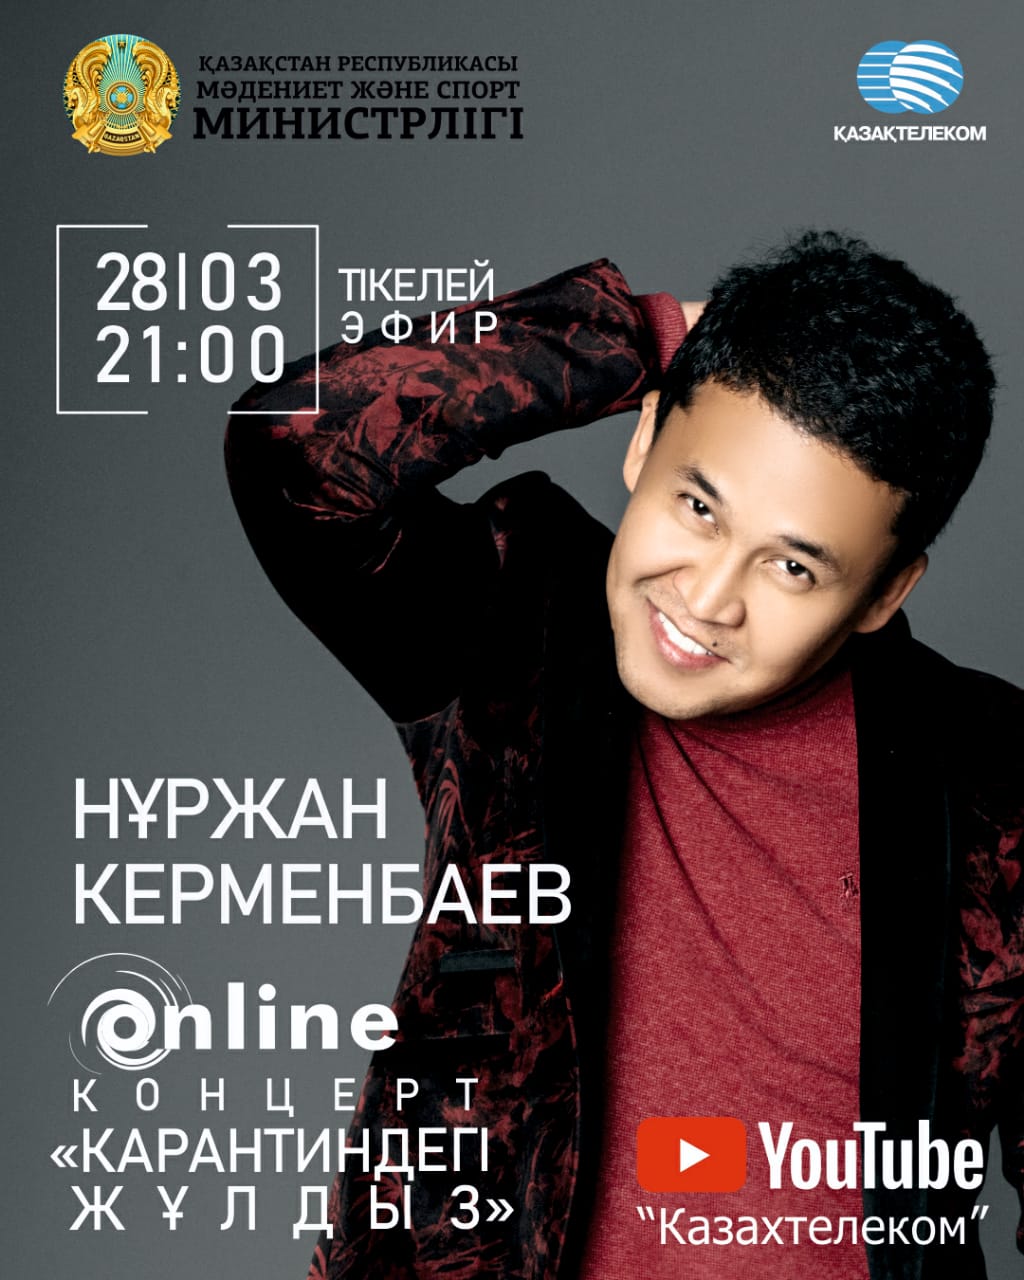 Бүгін Нұржан Керменбаев онлайн концерт өткізеді